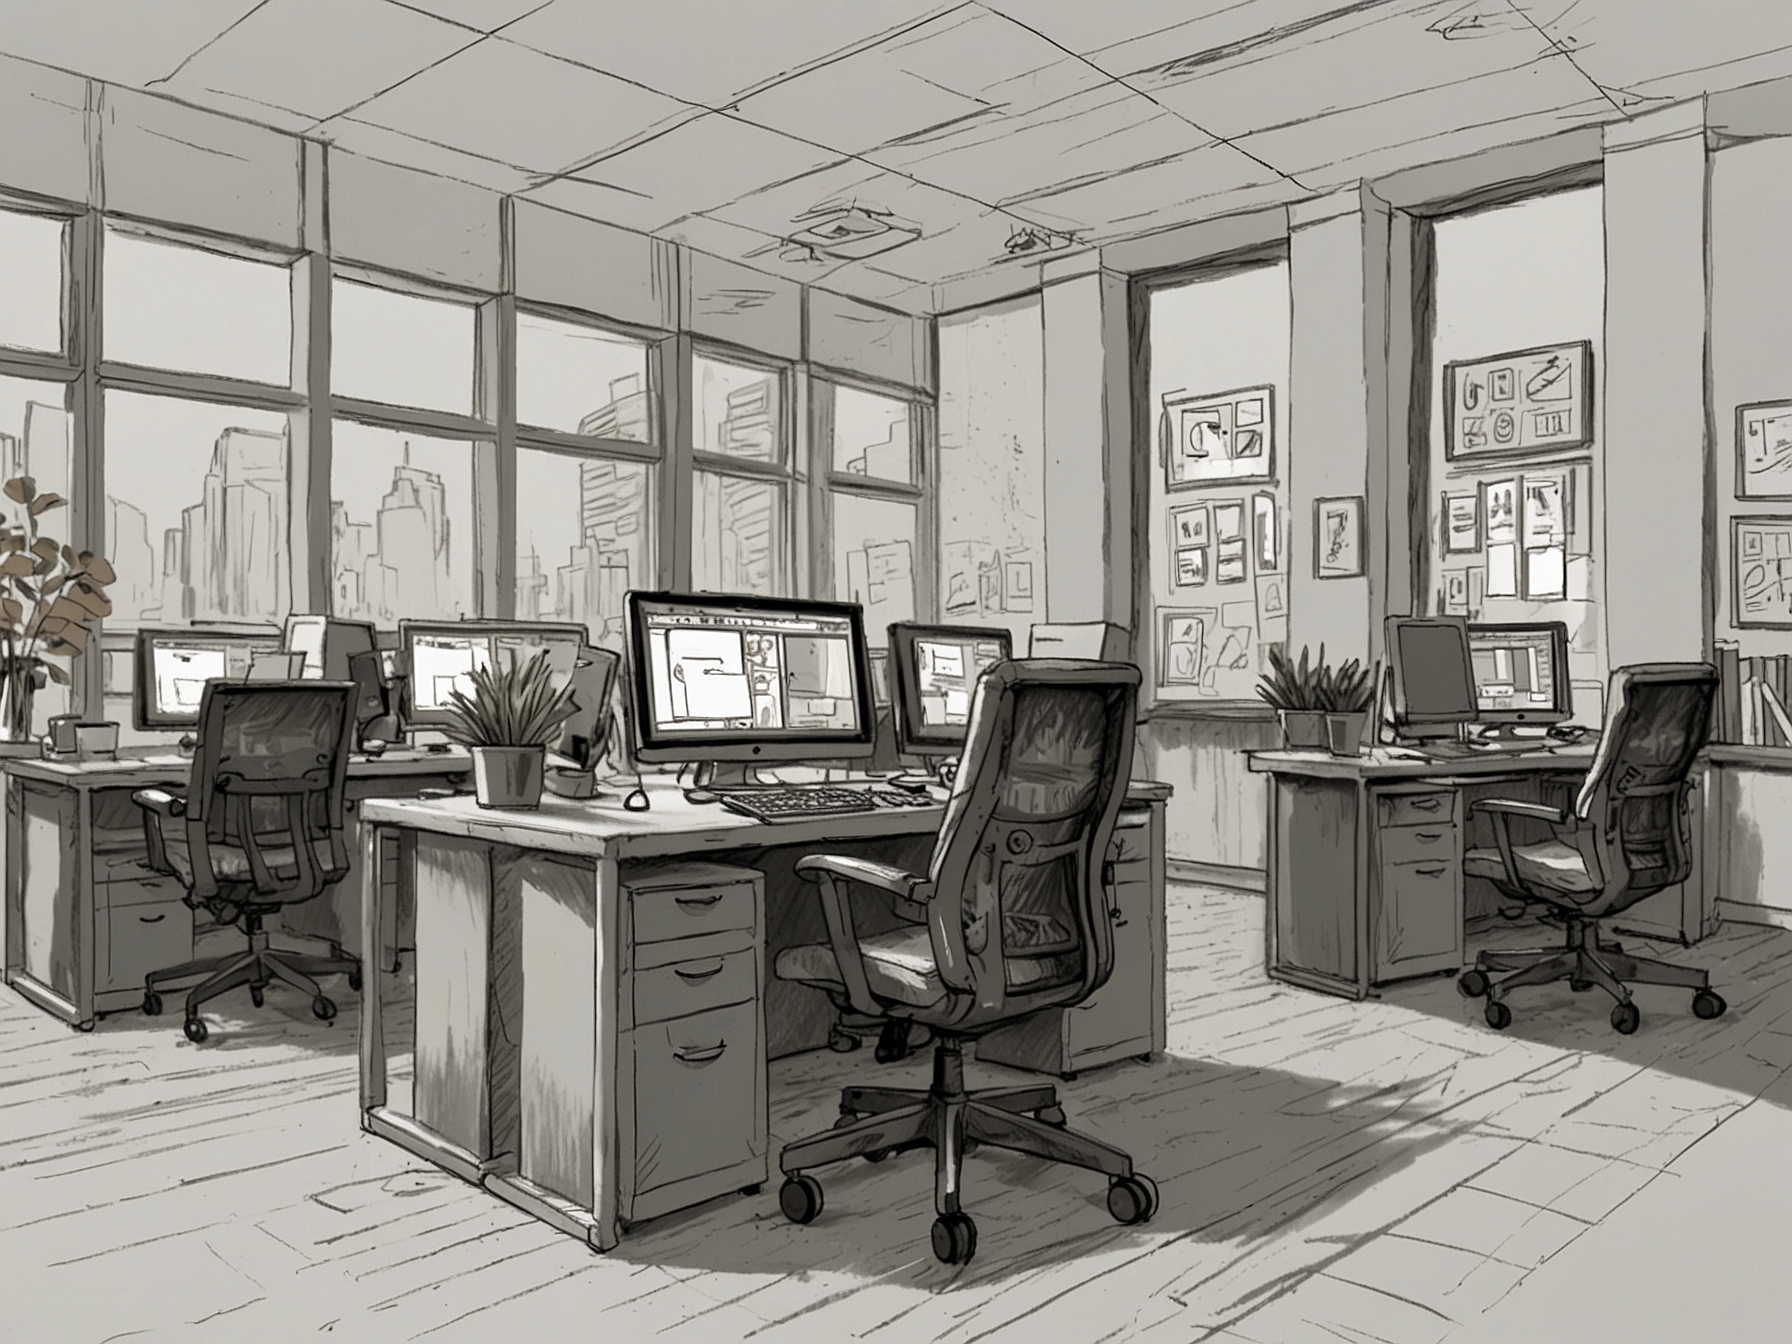 Image showing a joyful office environment, symbolizing celebration and accomplishment at work.